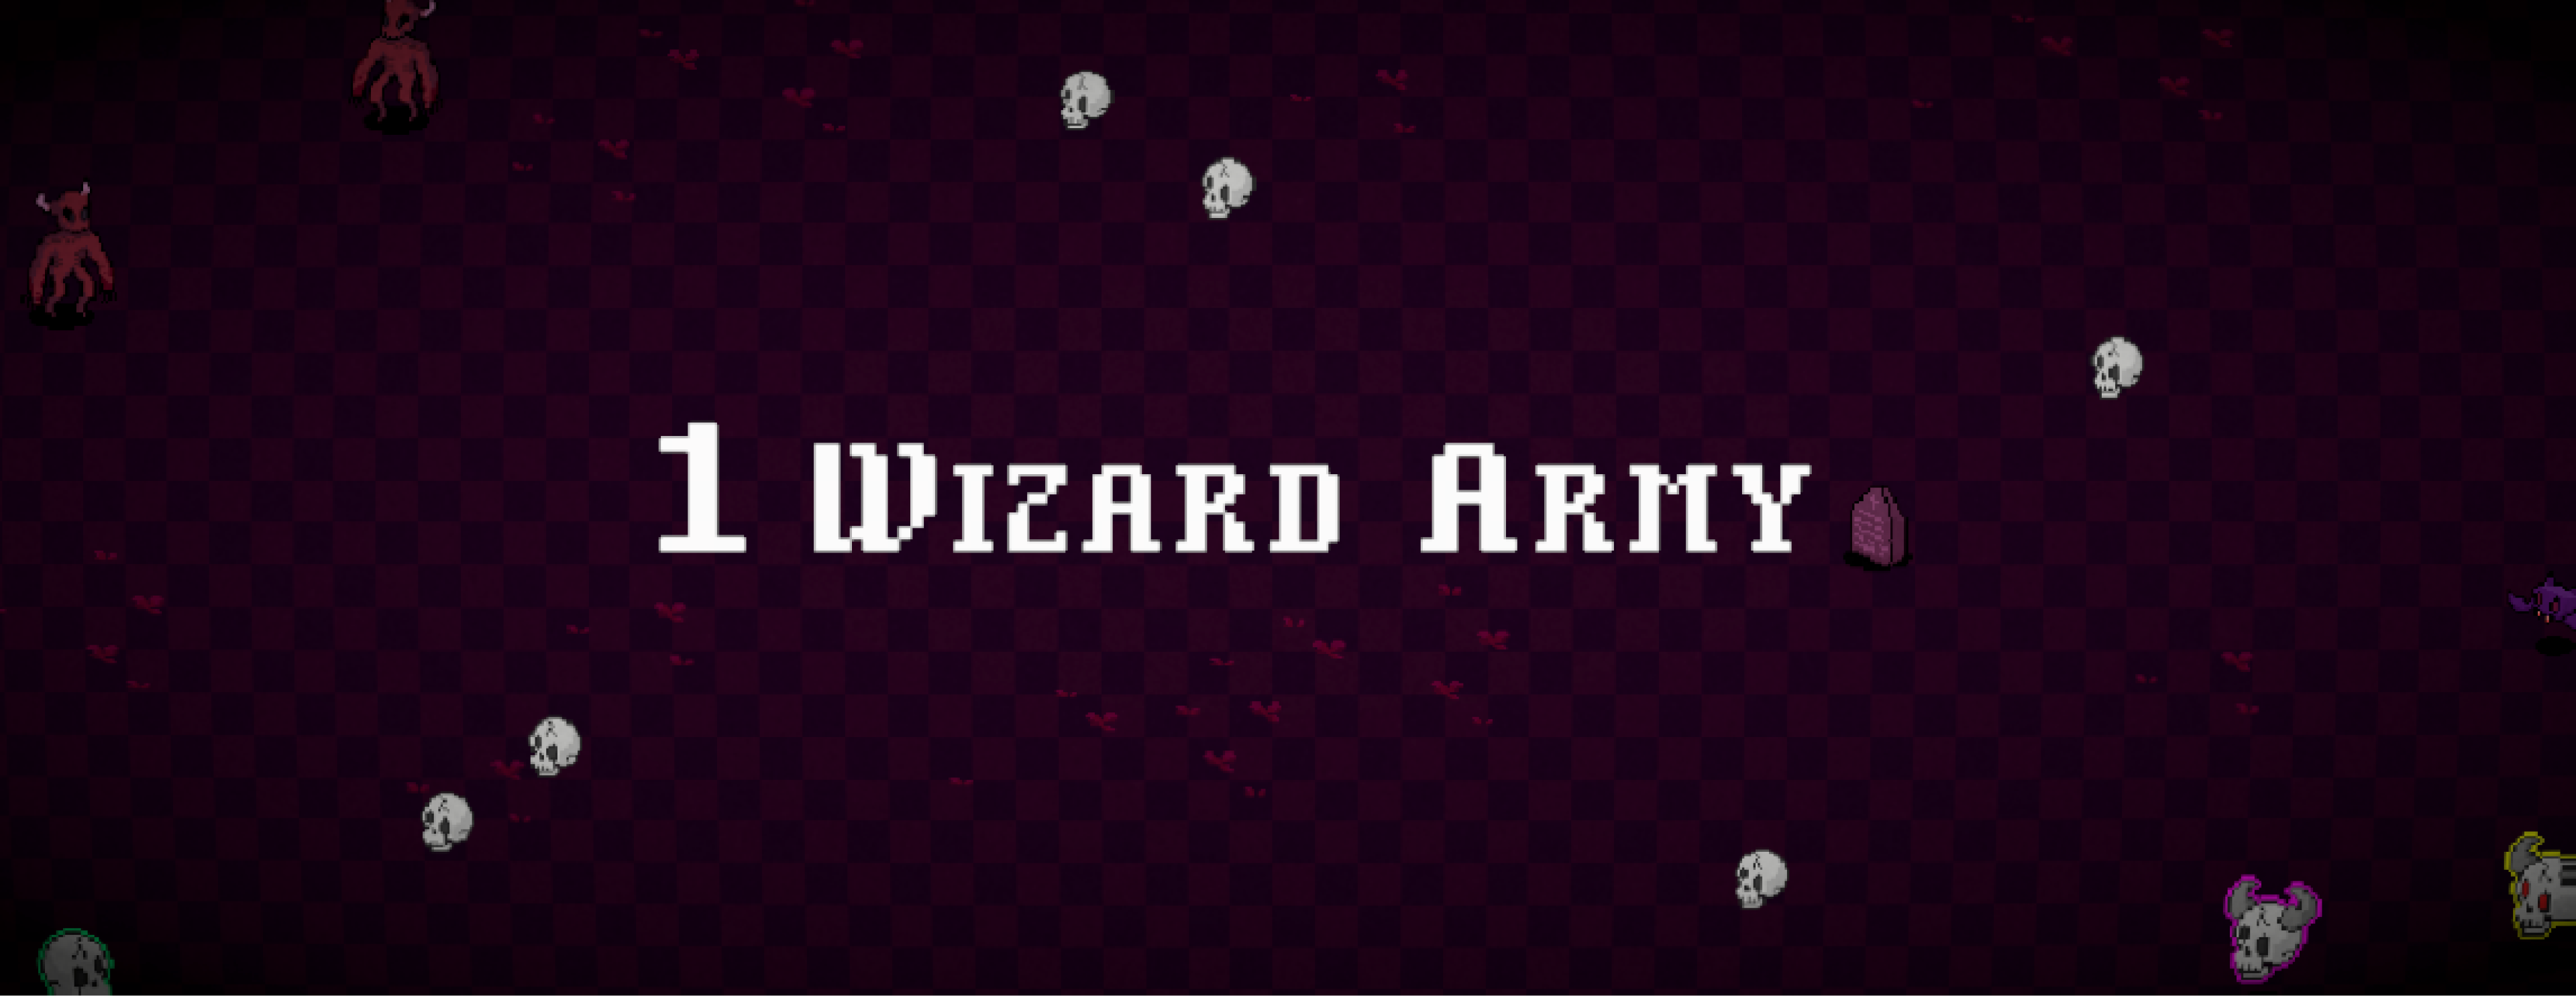 1 Wizard Army